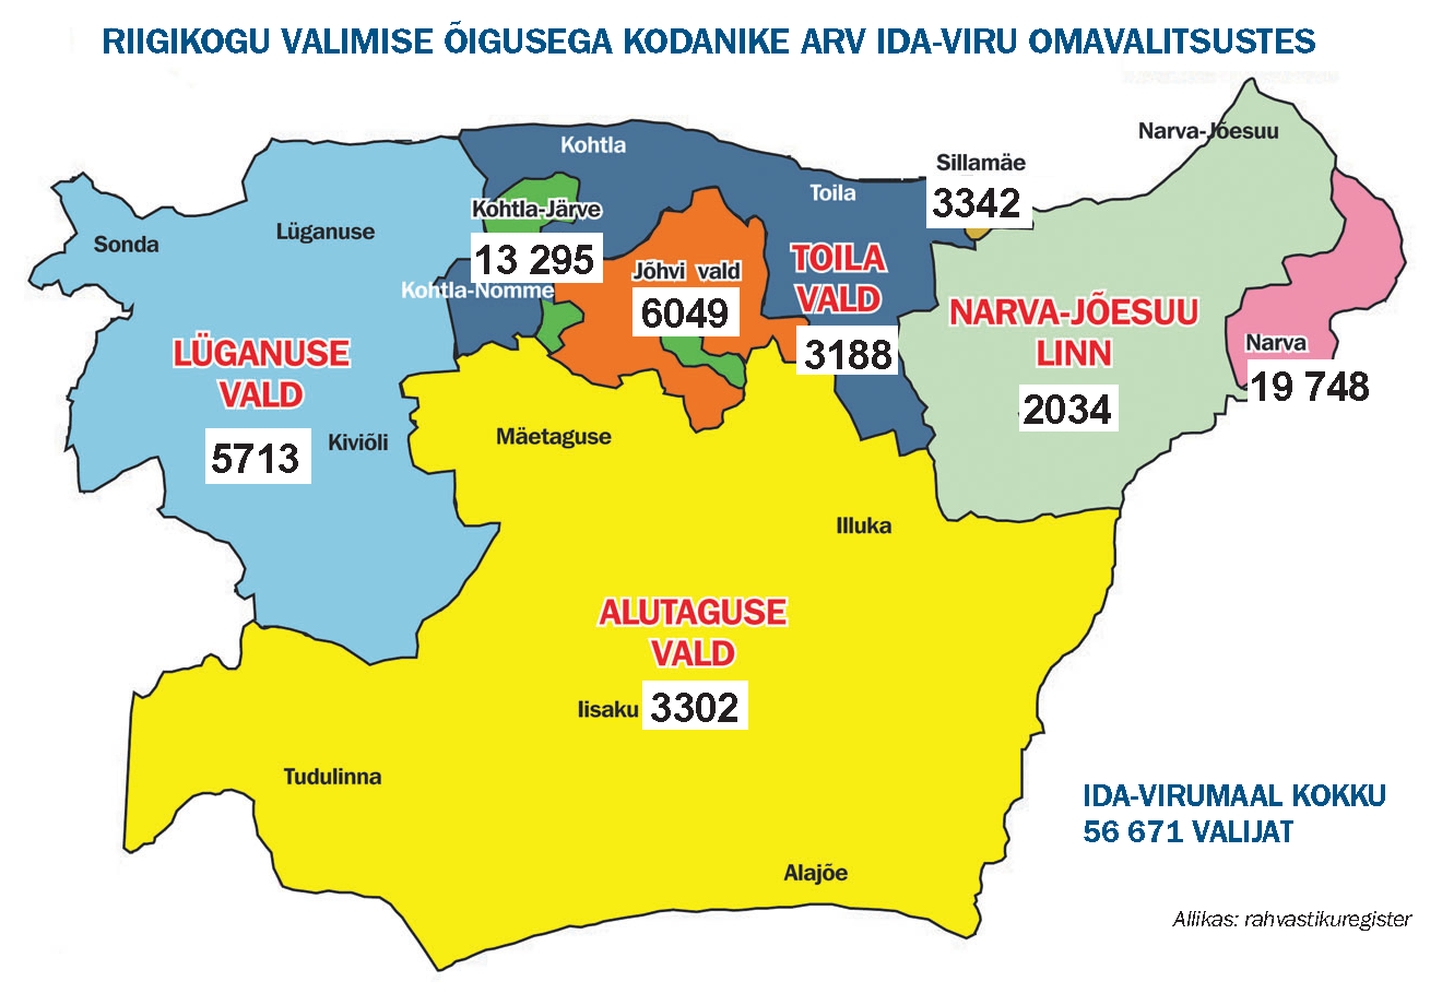 Hääleõiguslike kodanike arv Ida-Viru omavalitsustes.